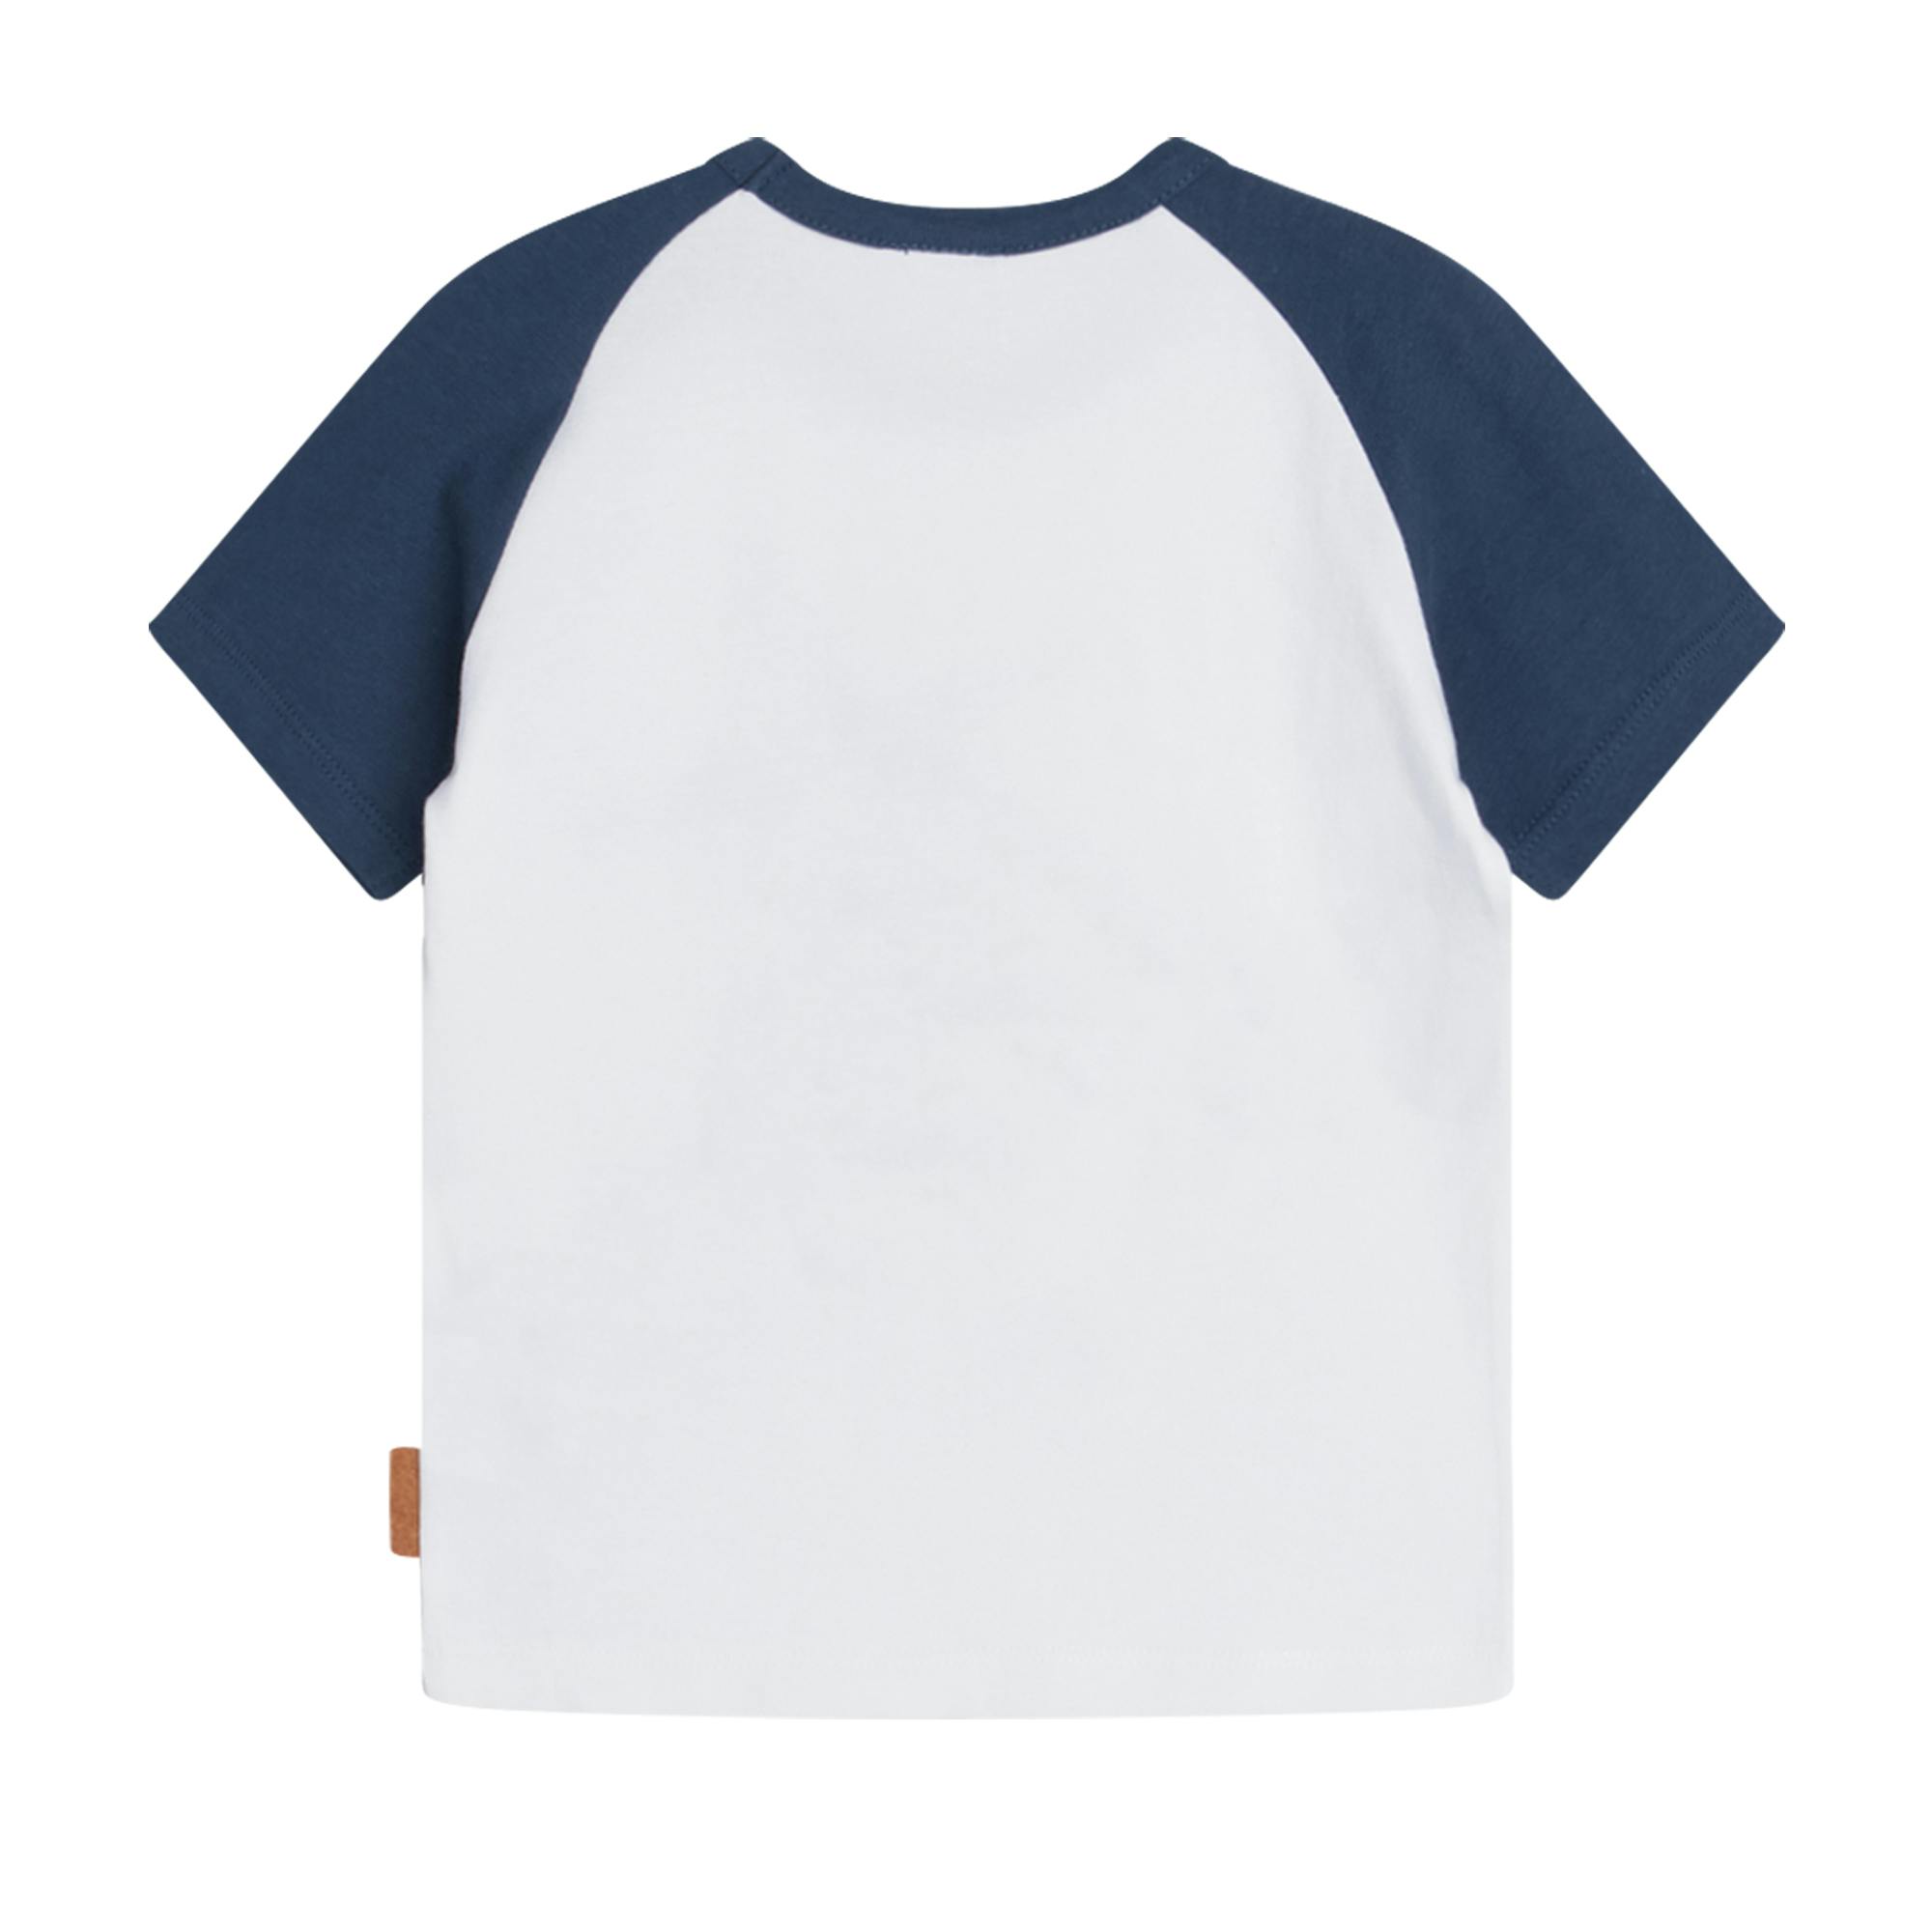 T-shirt - Ancher Blue moon